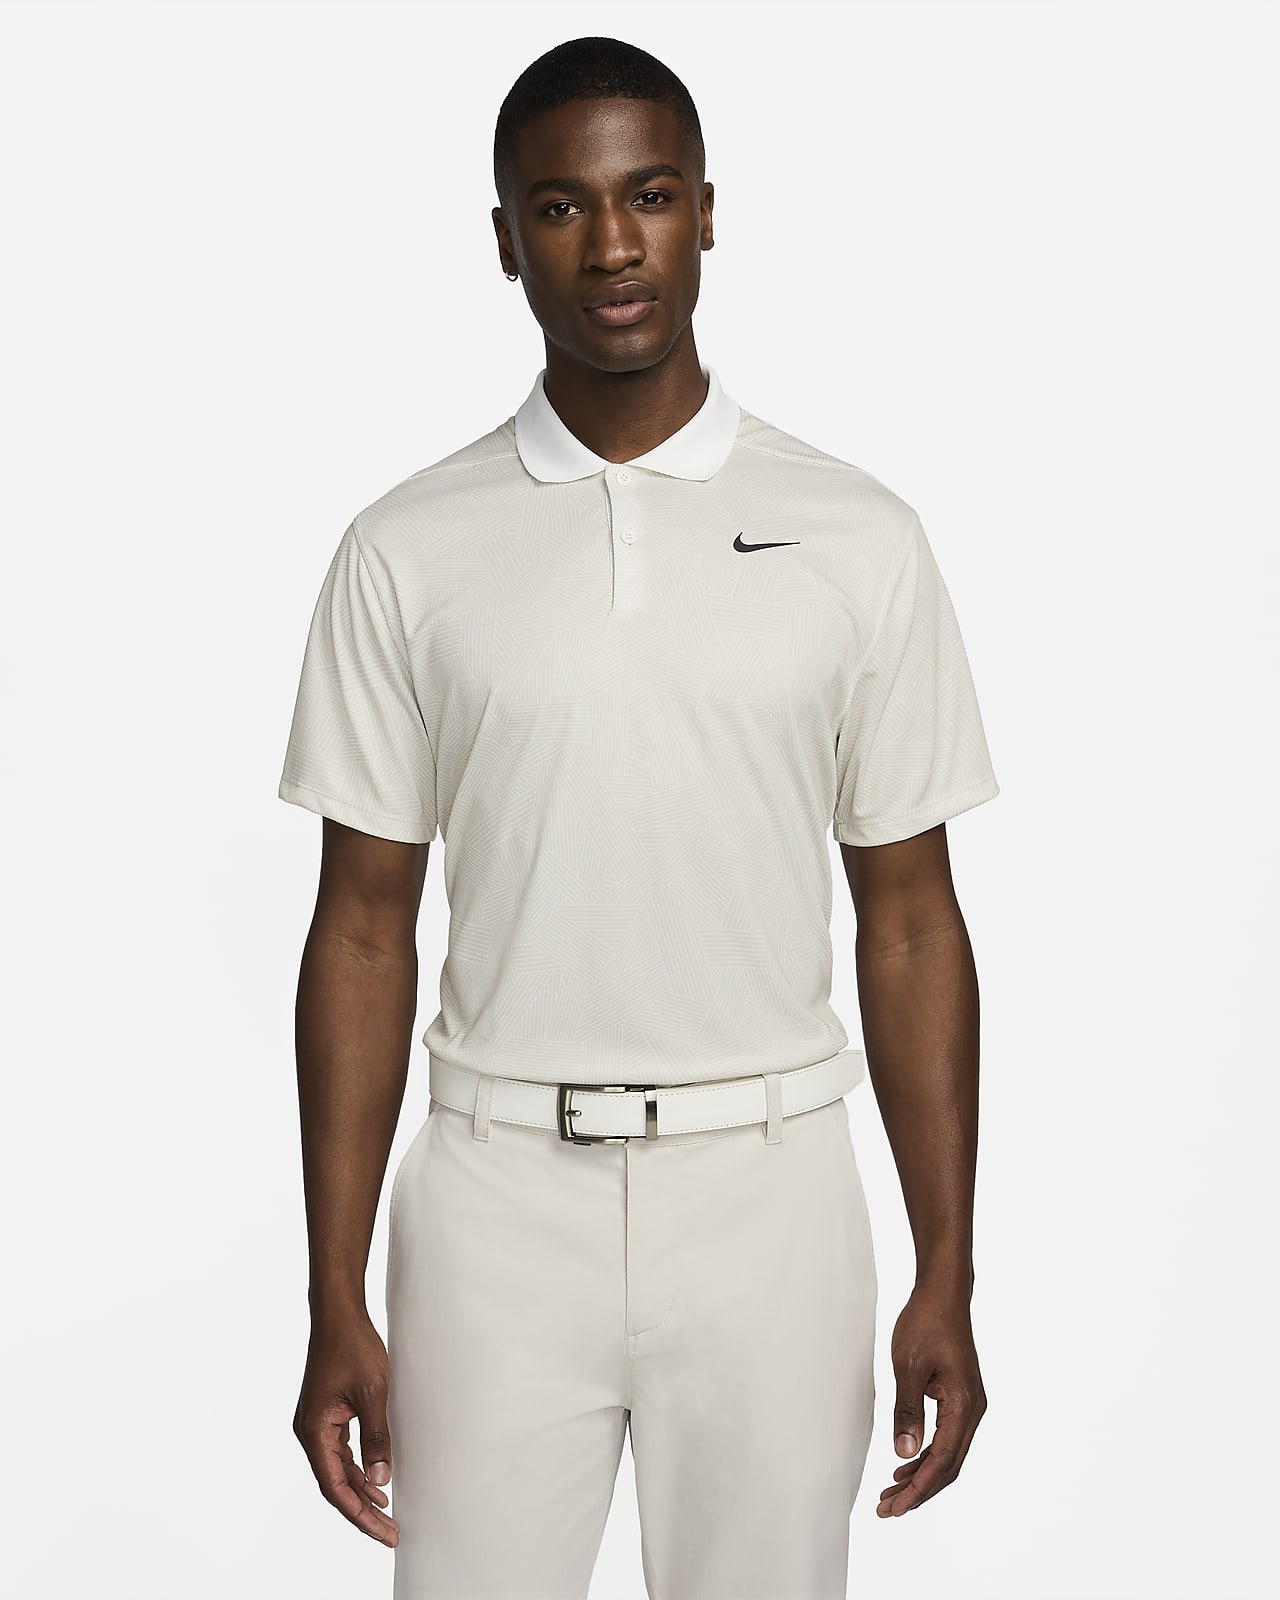 Ανδρική μπλούζα πόλο για γκολφ Dri-FIT Nike Victory+